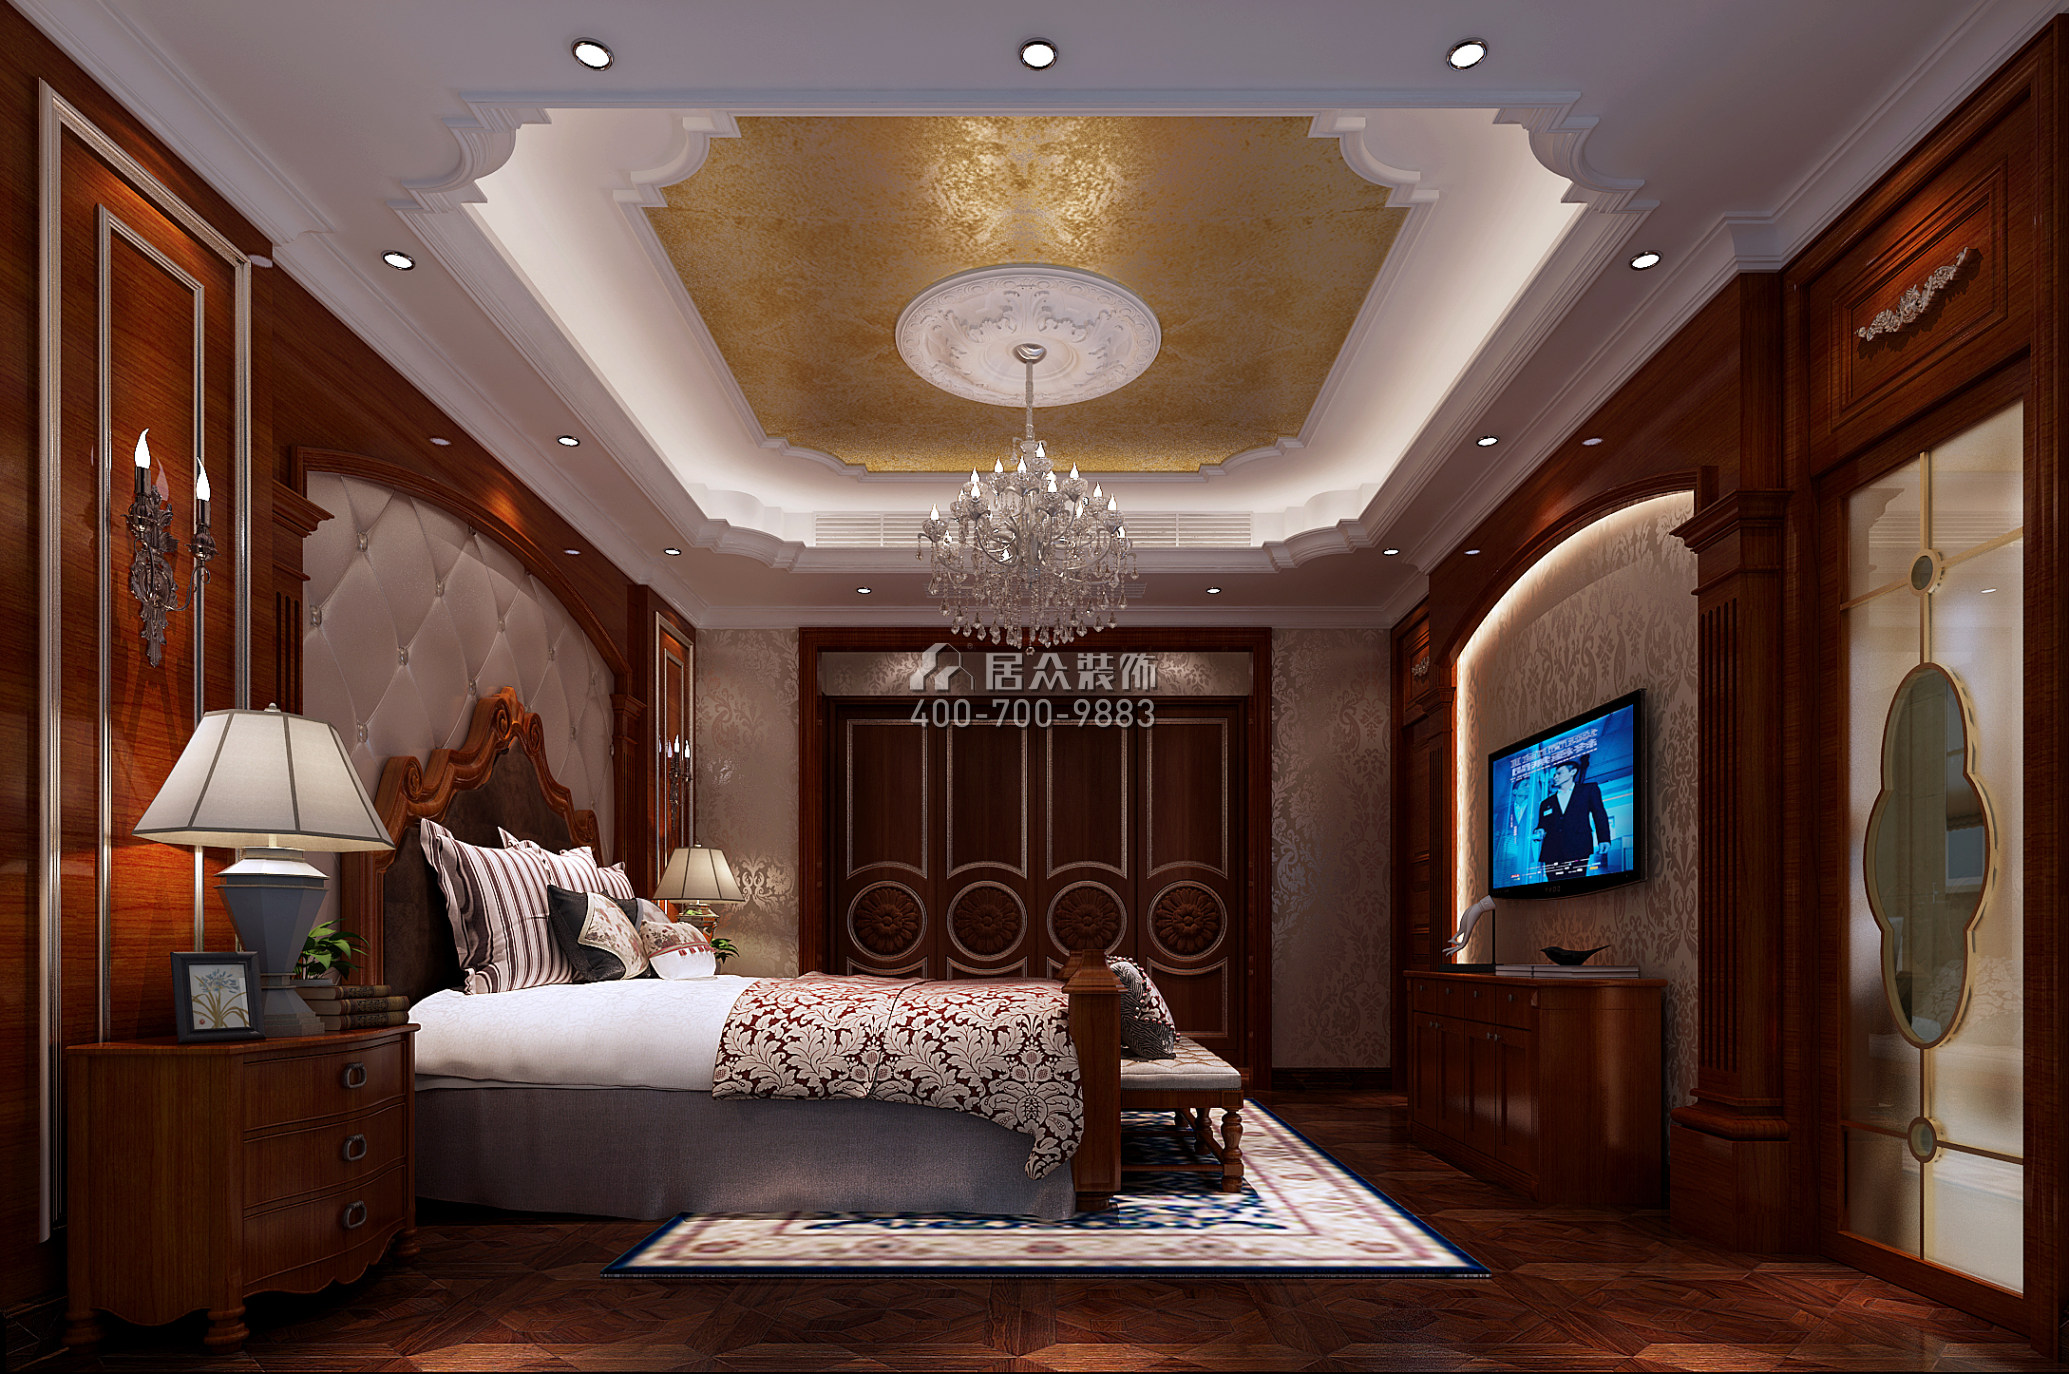 雅寶新城280平方米新古典風格別墅戶型臥室裝修效果圖